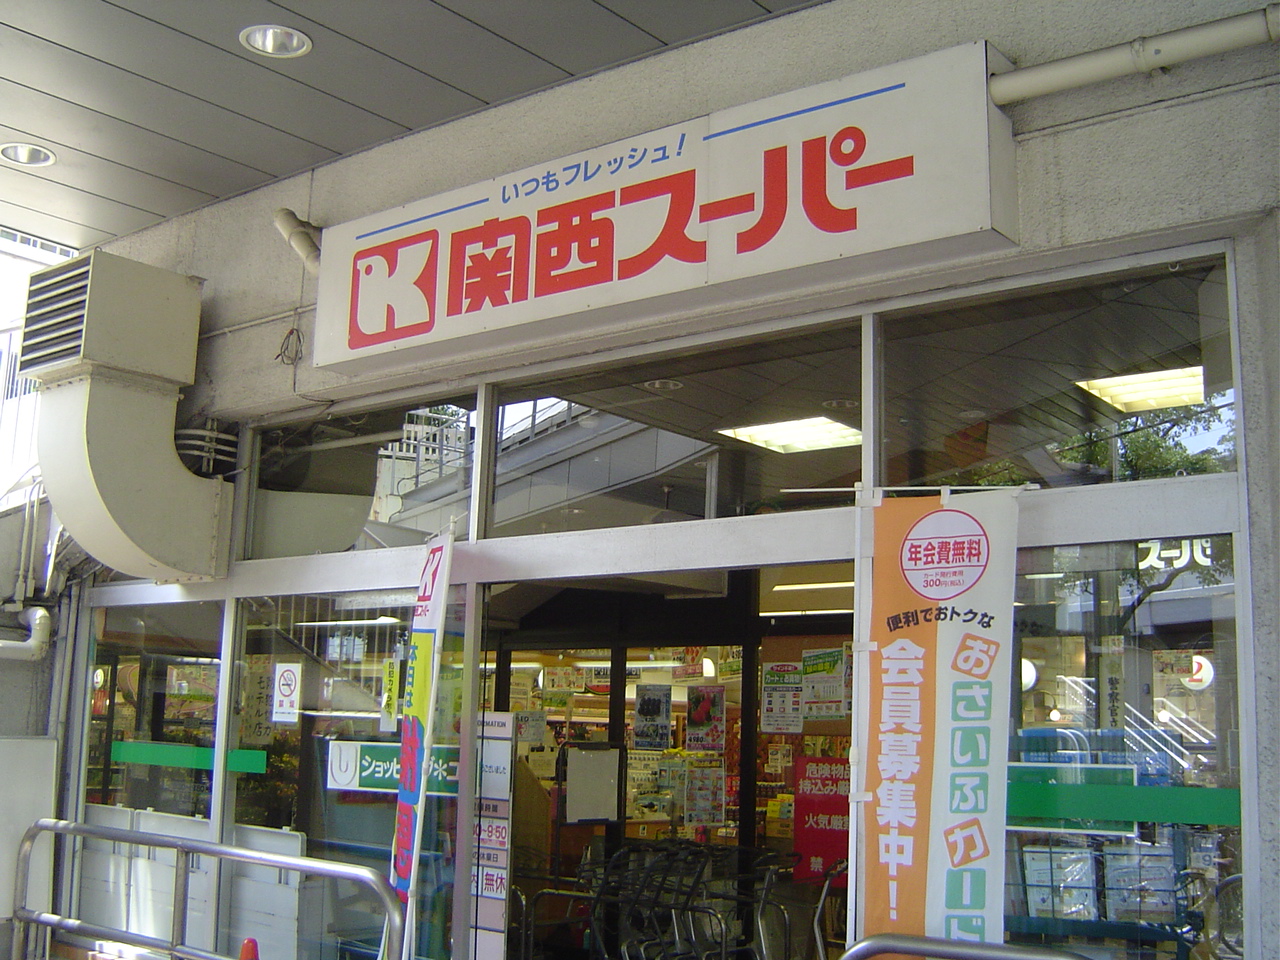 Supermarket. 504m to the Kansai Super Hyogo store (Super)